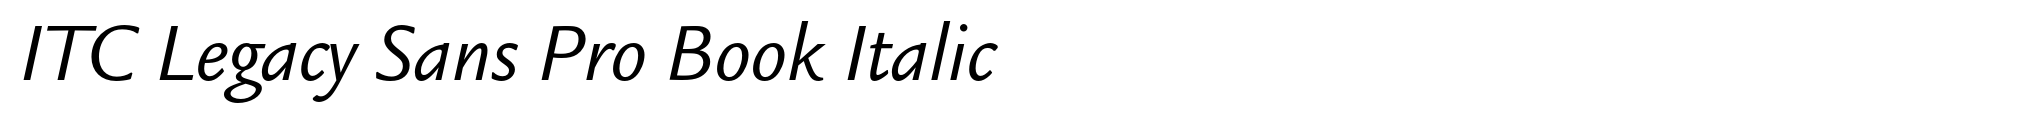 ITC Legacy Sans Pro Book Italic image